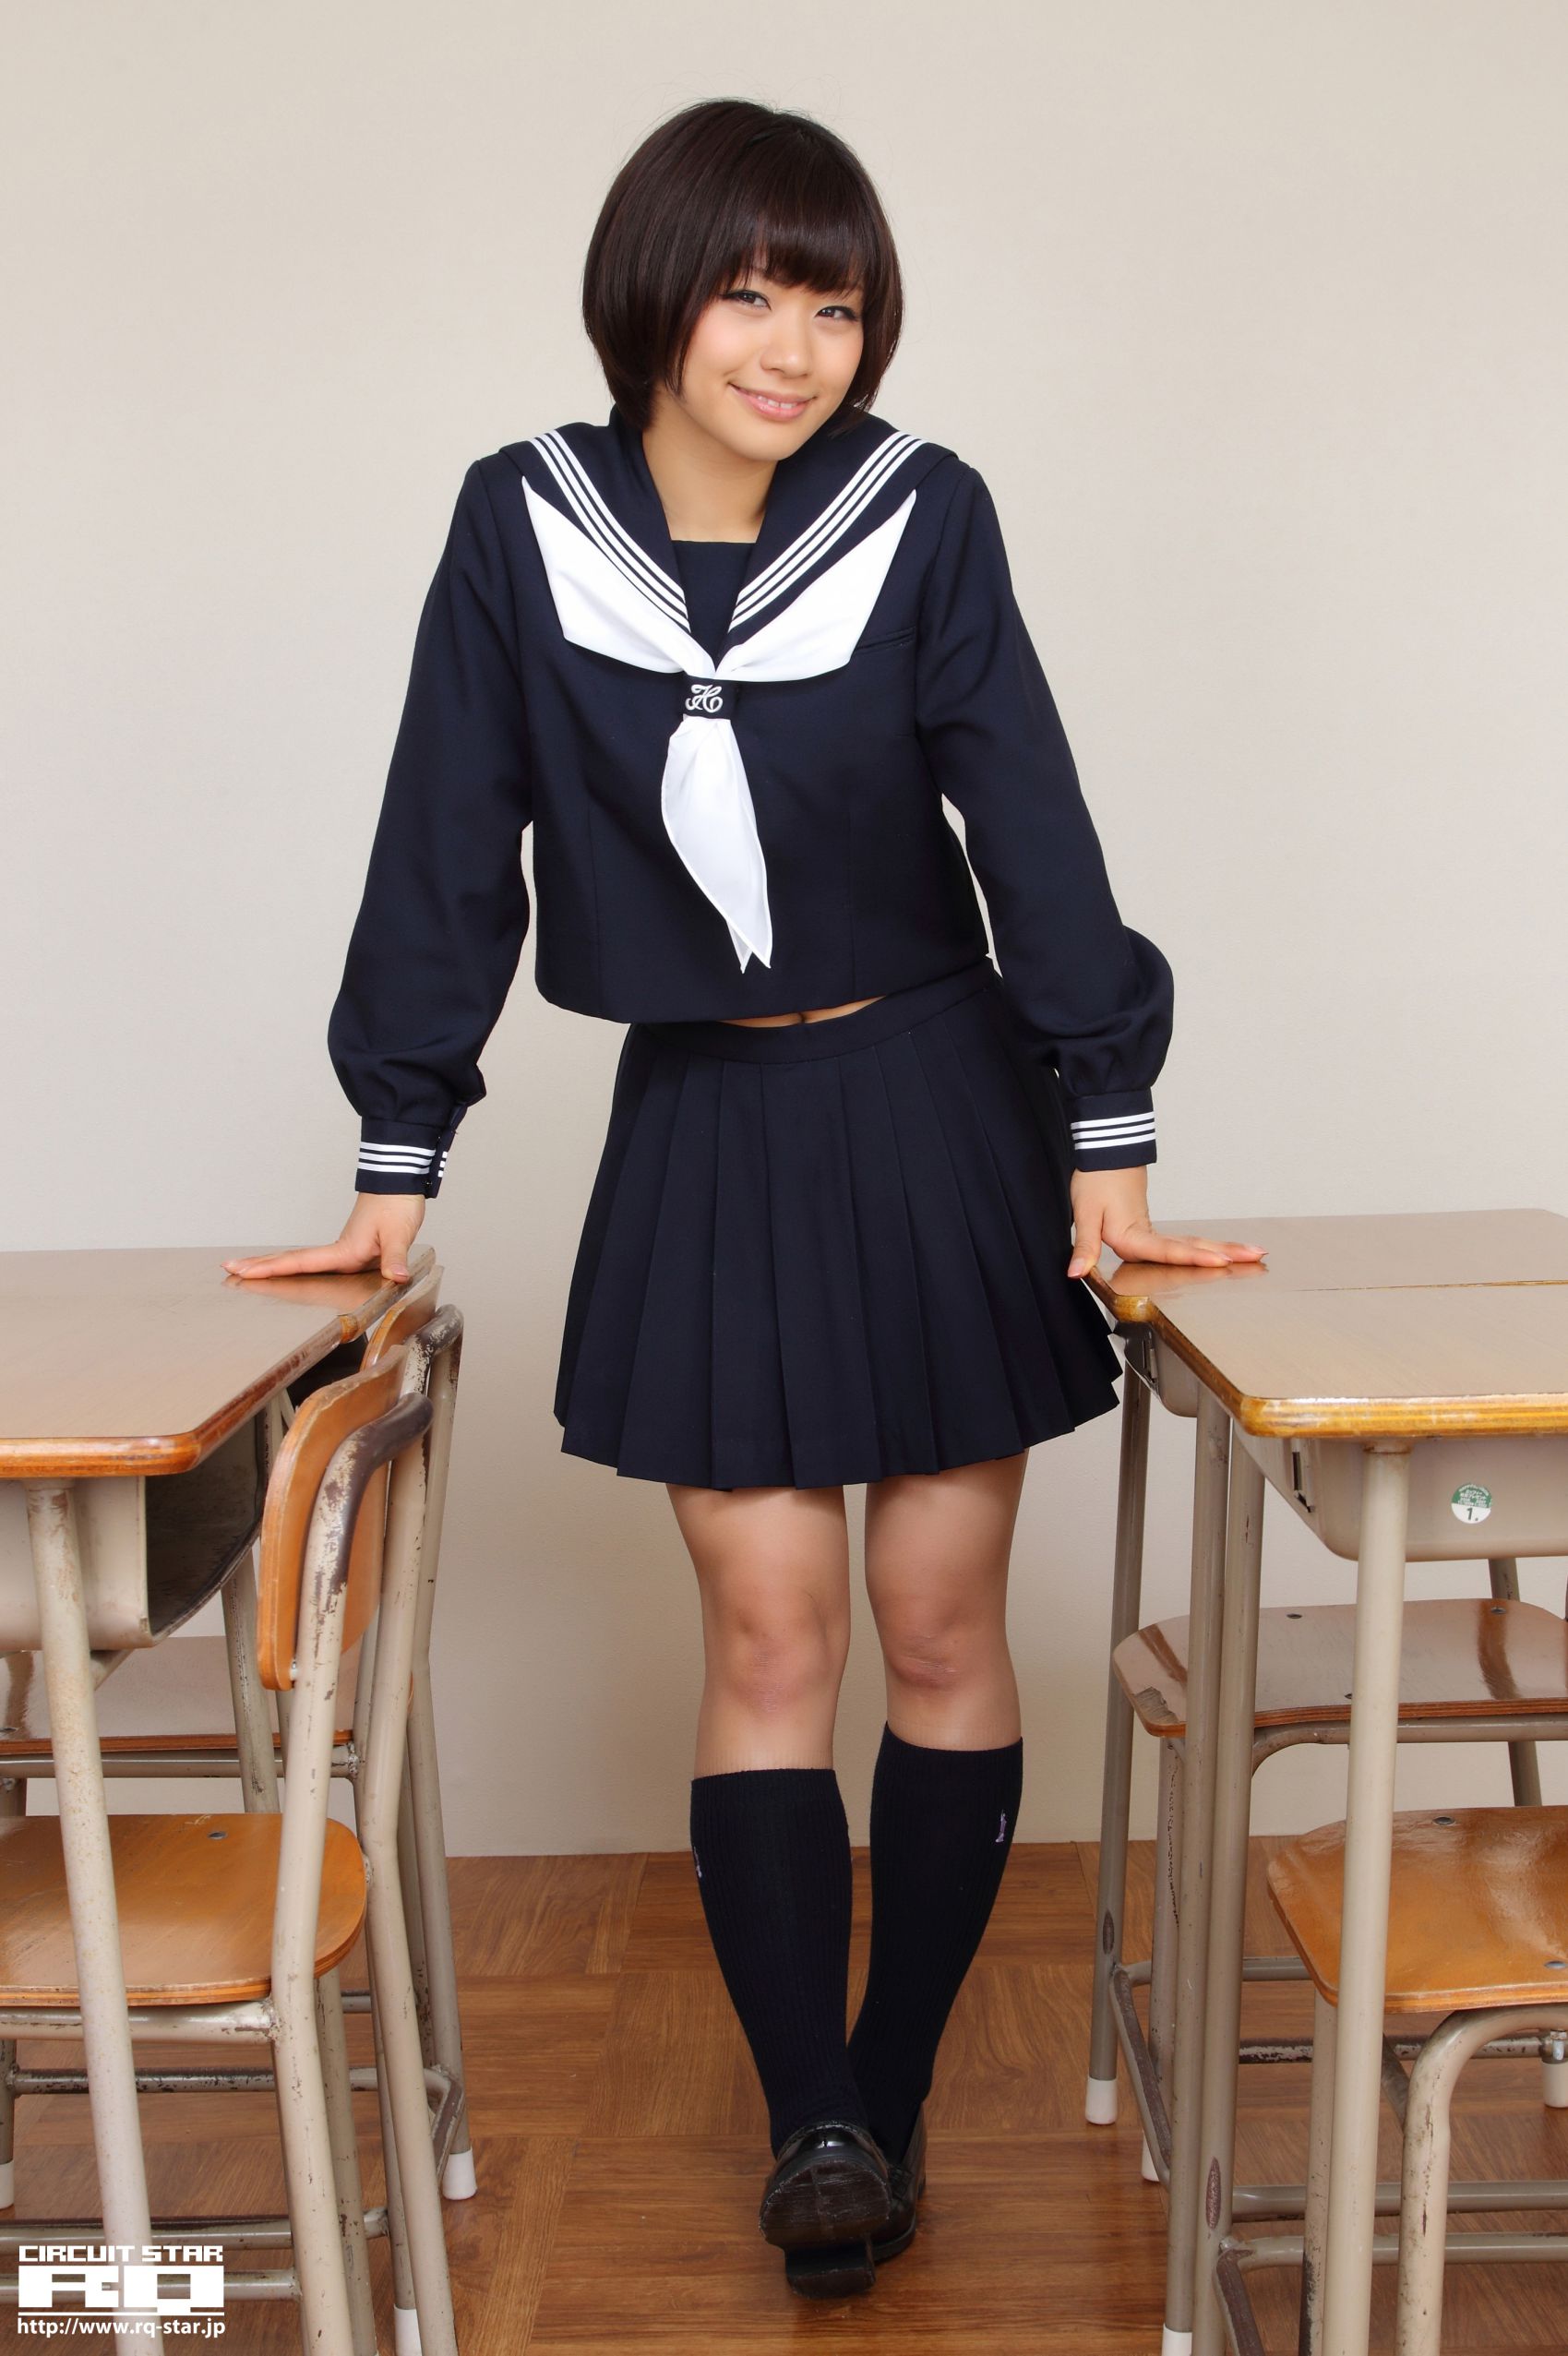 安枝瞳 RQ-STAR]高清写真图NO.00615 Sailor Girl校服清纯RQ-STAR日本 安枝瞳女神私房照_秀色女神